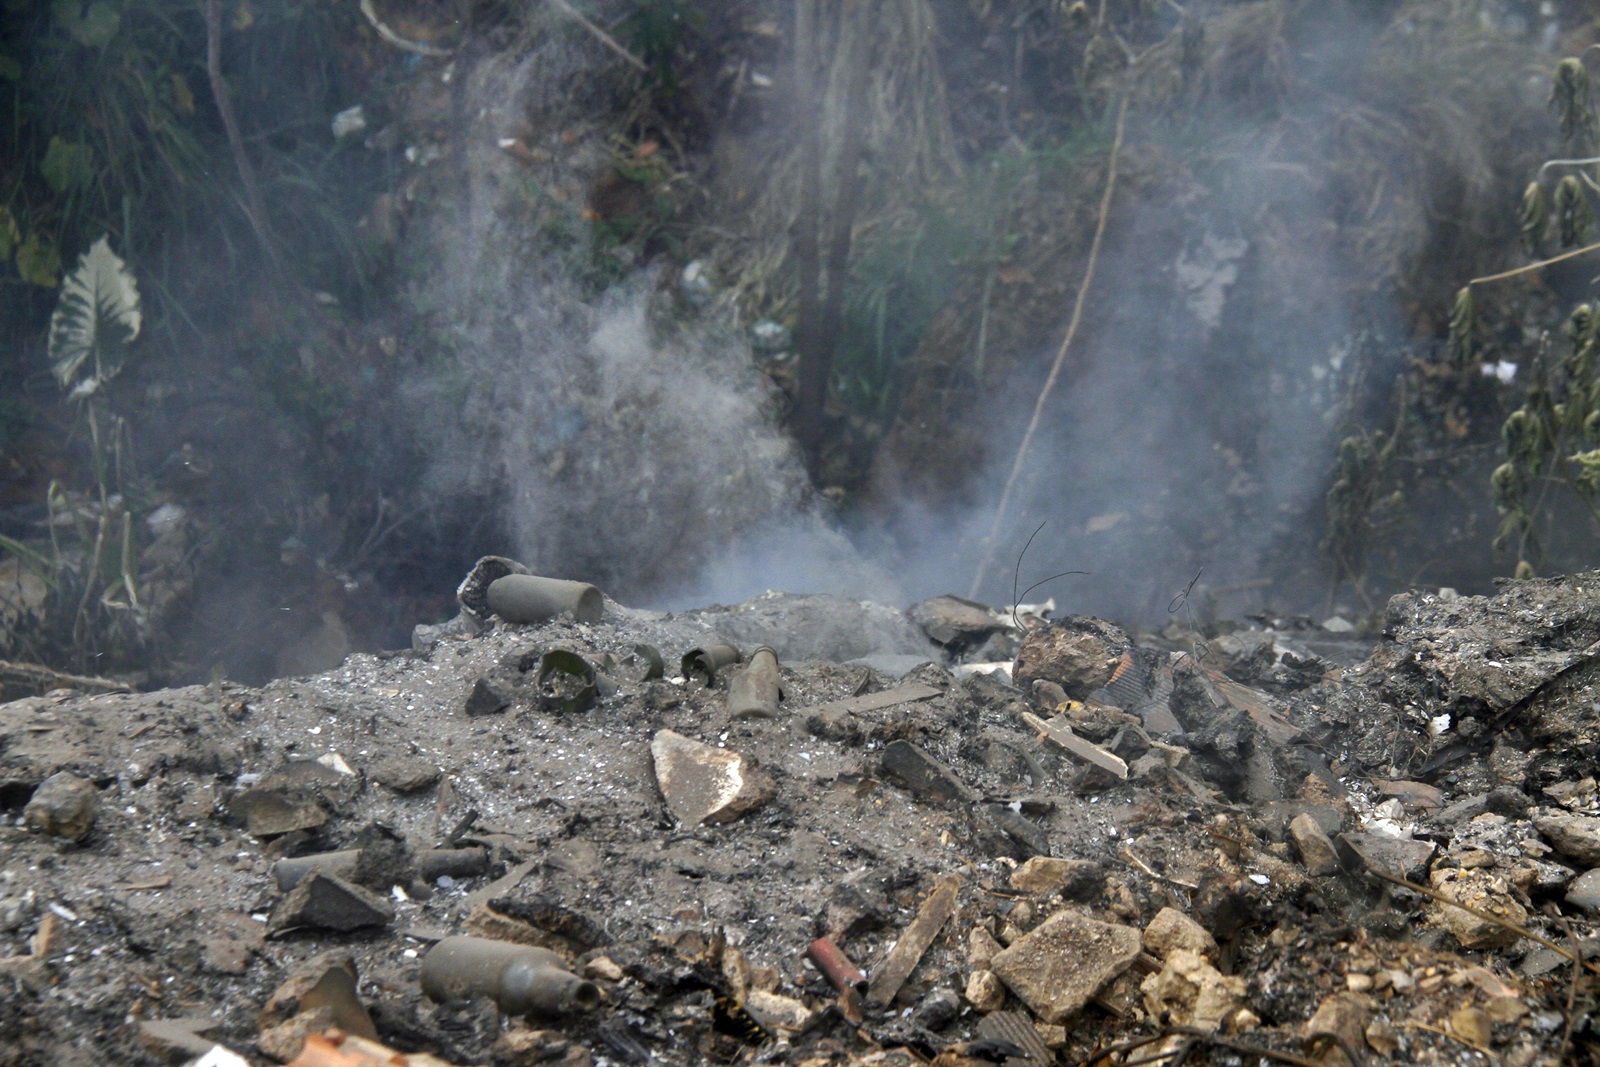 Persisten las frecuentes quemas de basura en sectores de Maturín